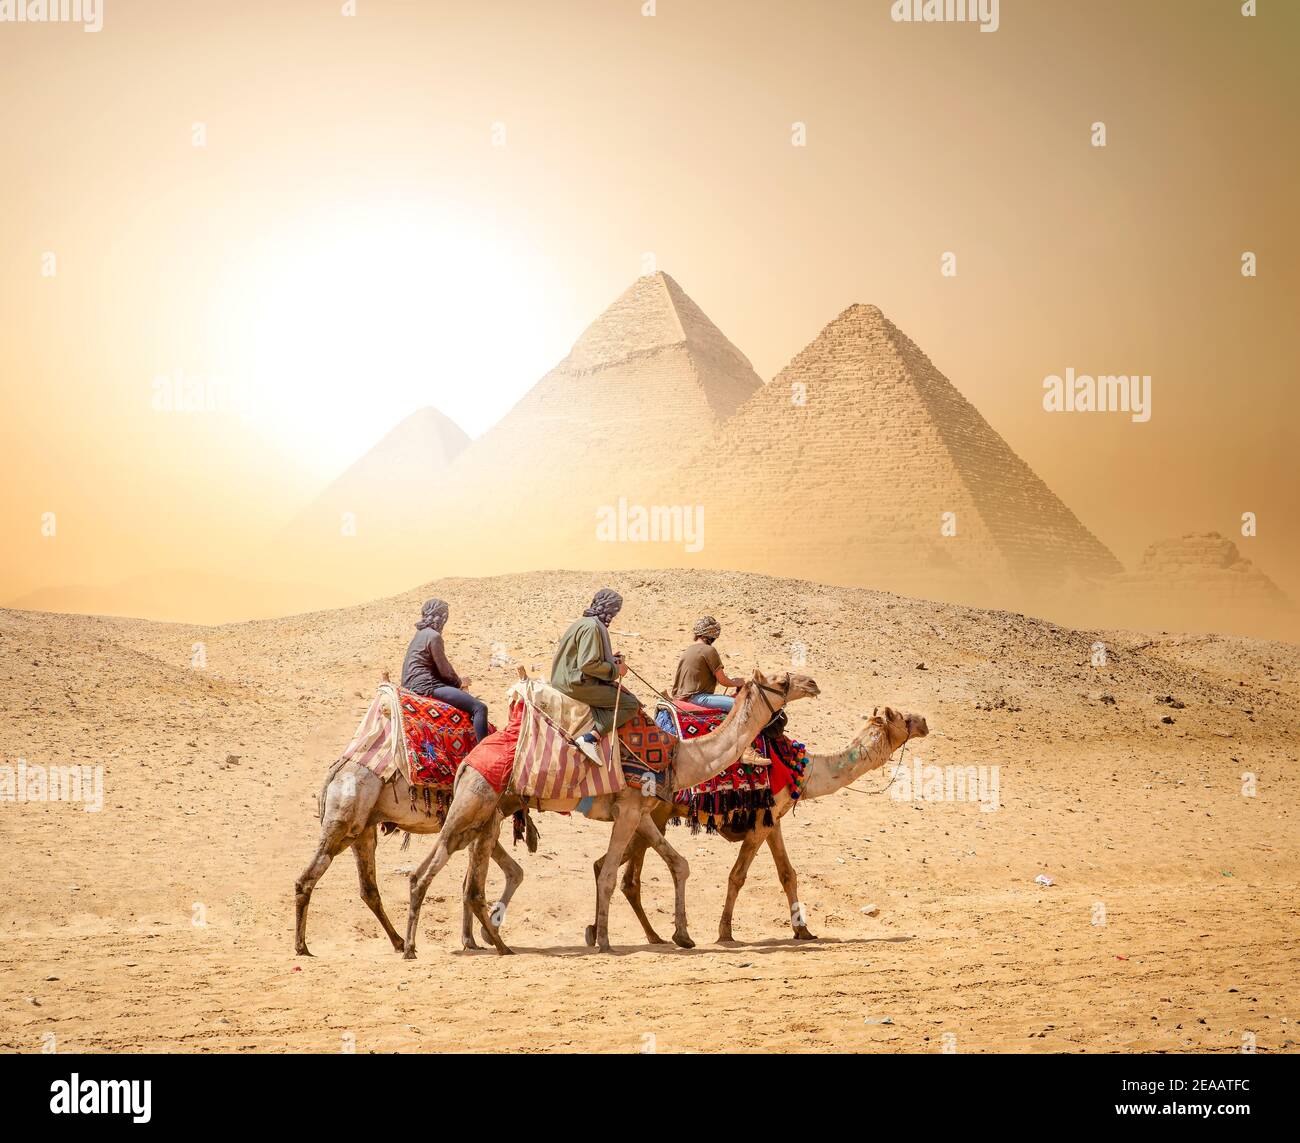 Caravana de camellos y las pirámides de Giza en Egipto Foto de stock